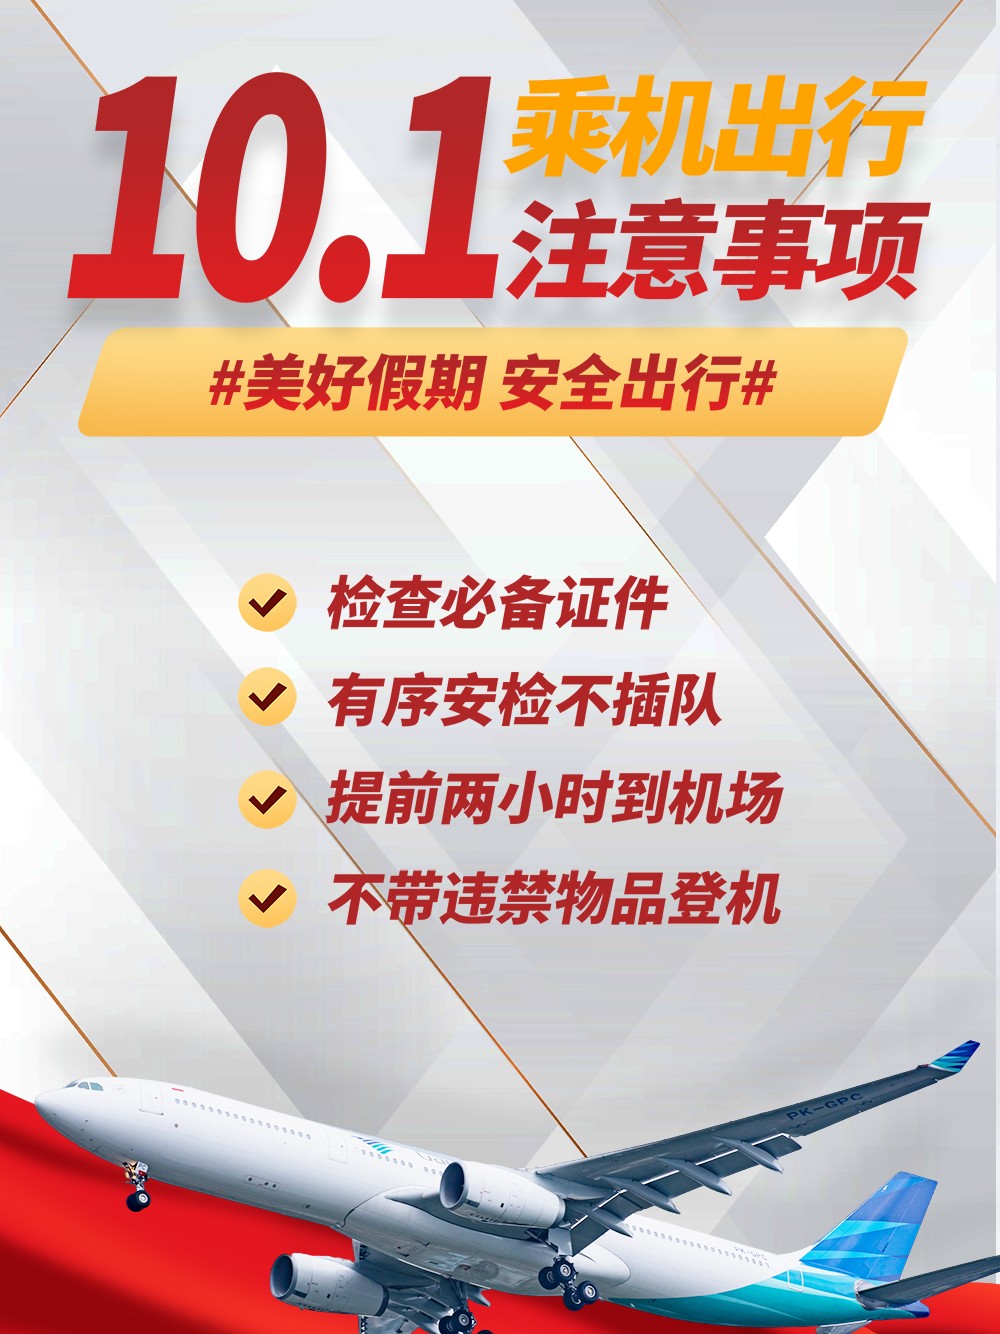 国庆节旅游乘机登机注意事项海报